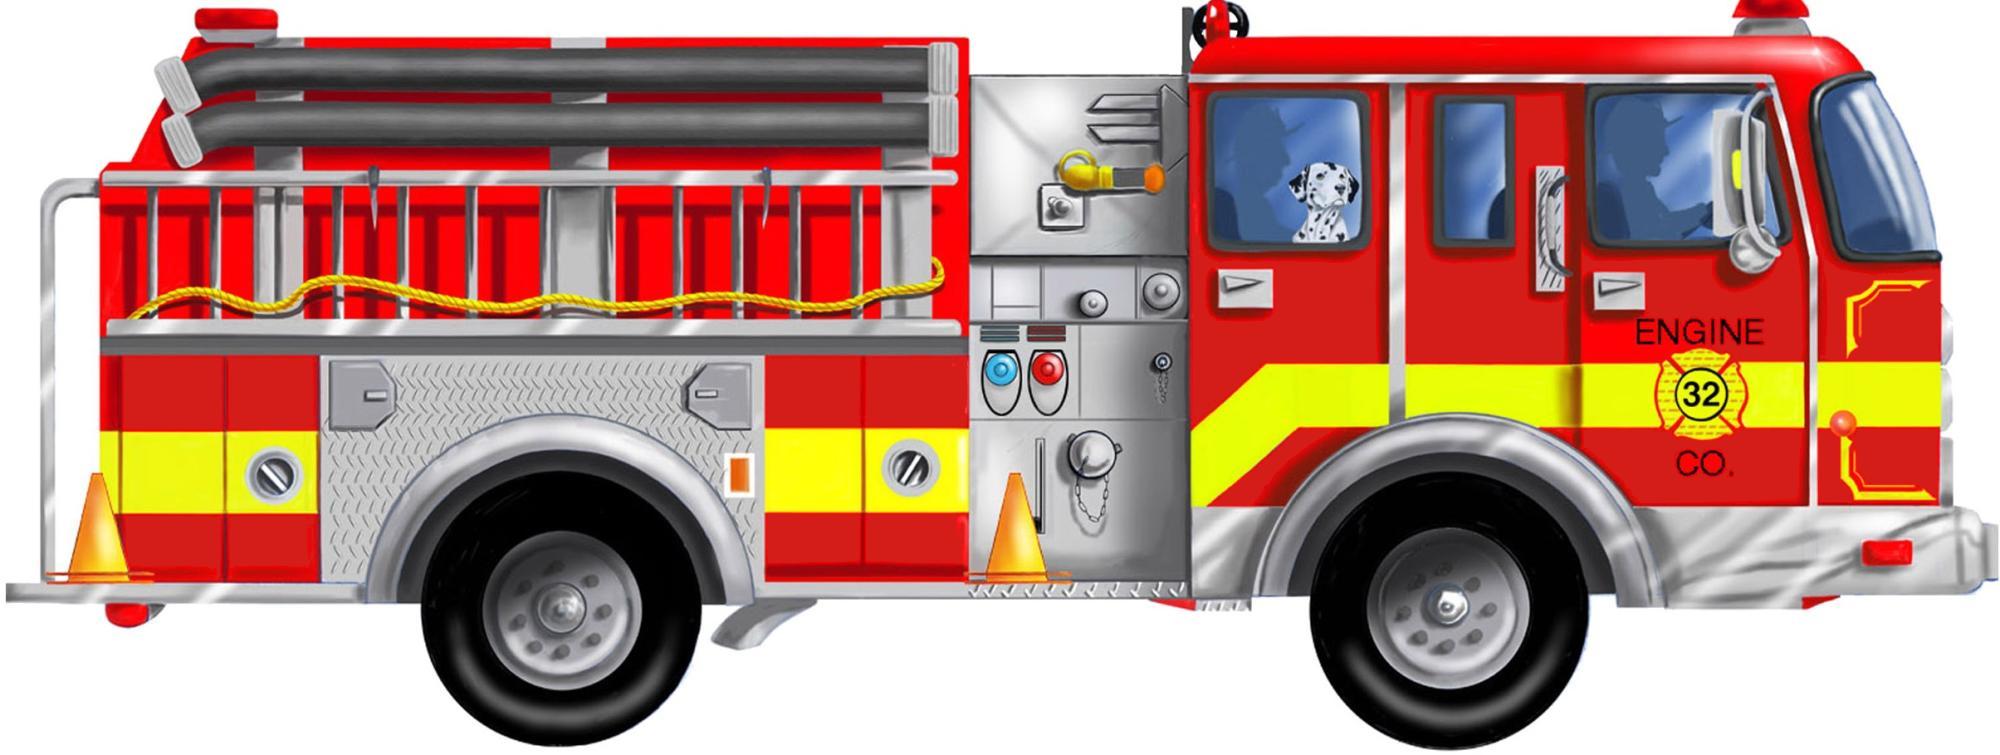 ... Fire Truck Vector Illustr